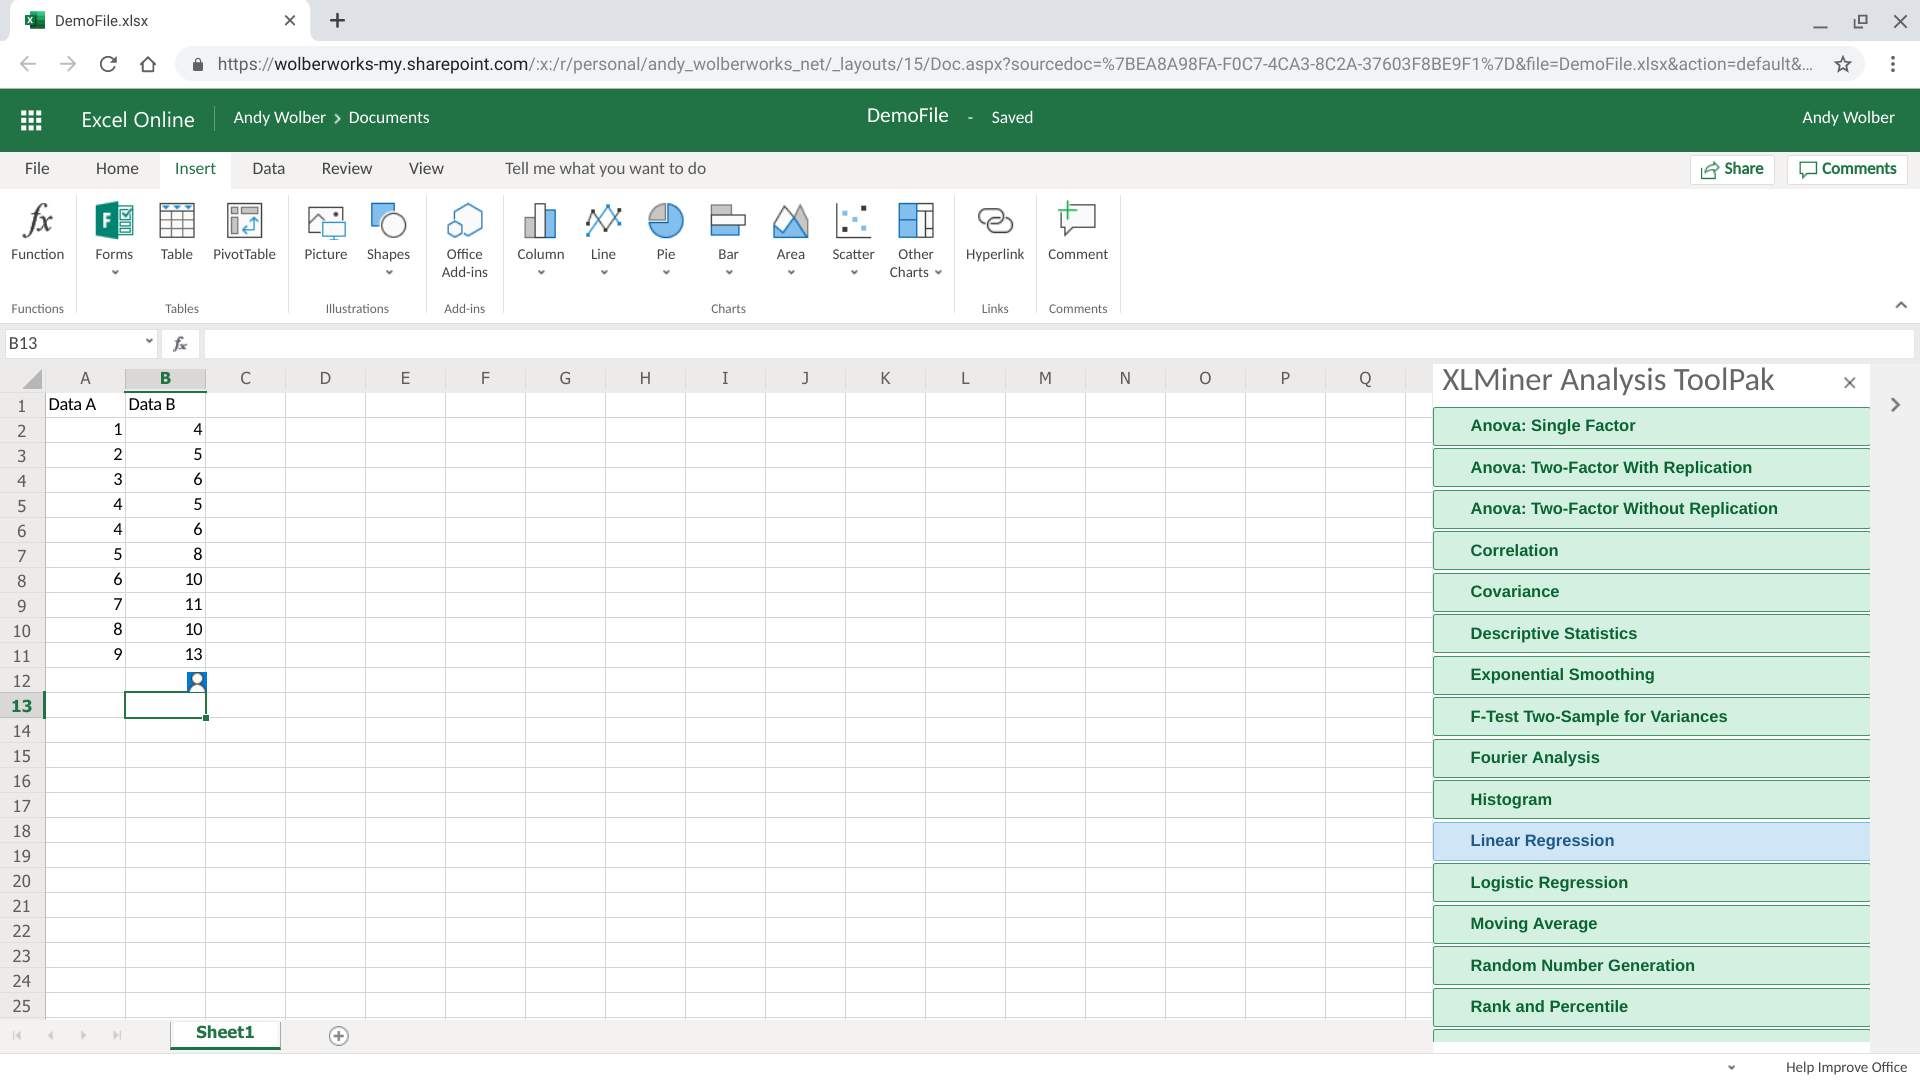 Пакет инструментов анализа XLMiner, отображаемый в правой части экрана Excel, с выделенной линейной регрессией (с наведением курсора)